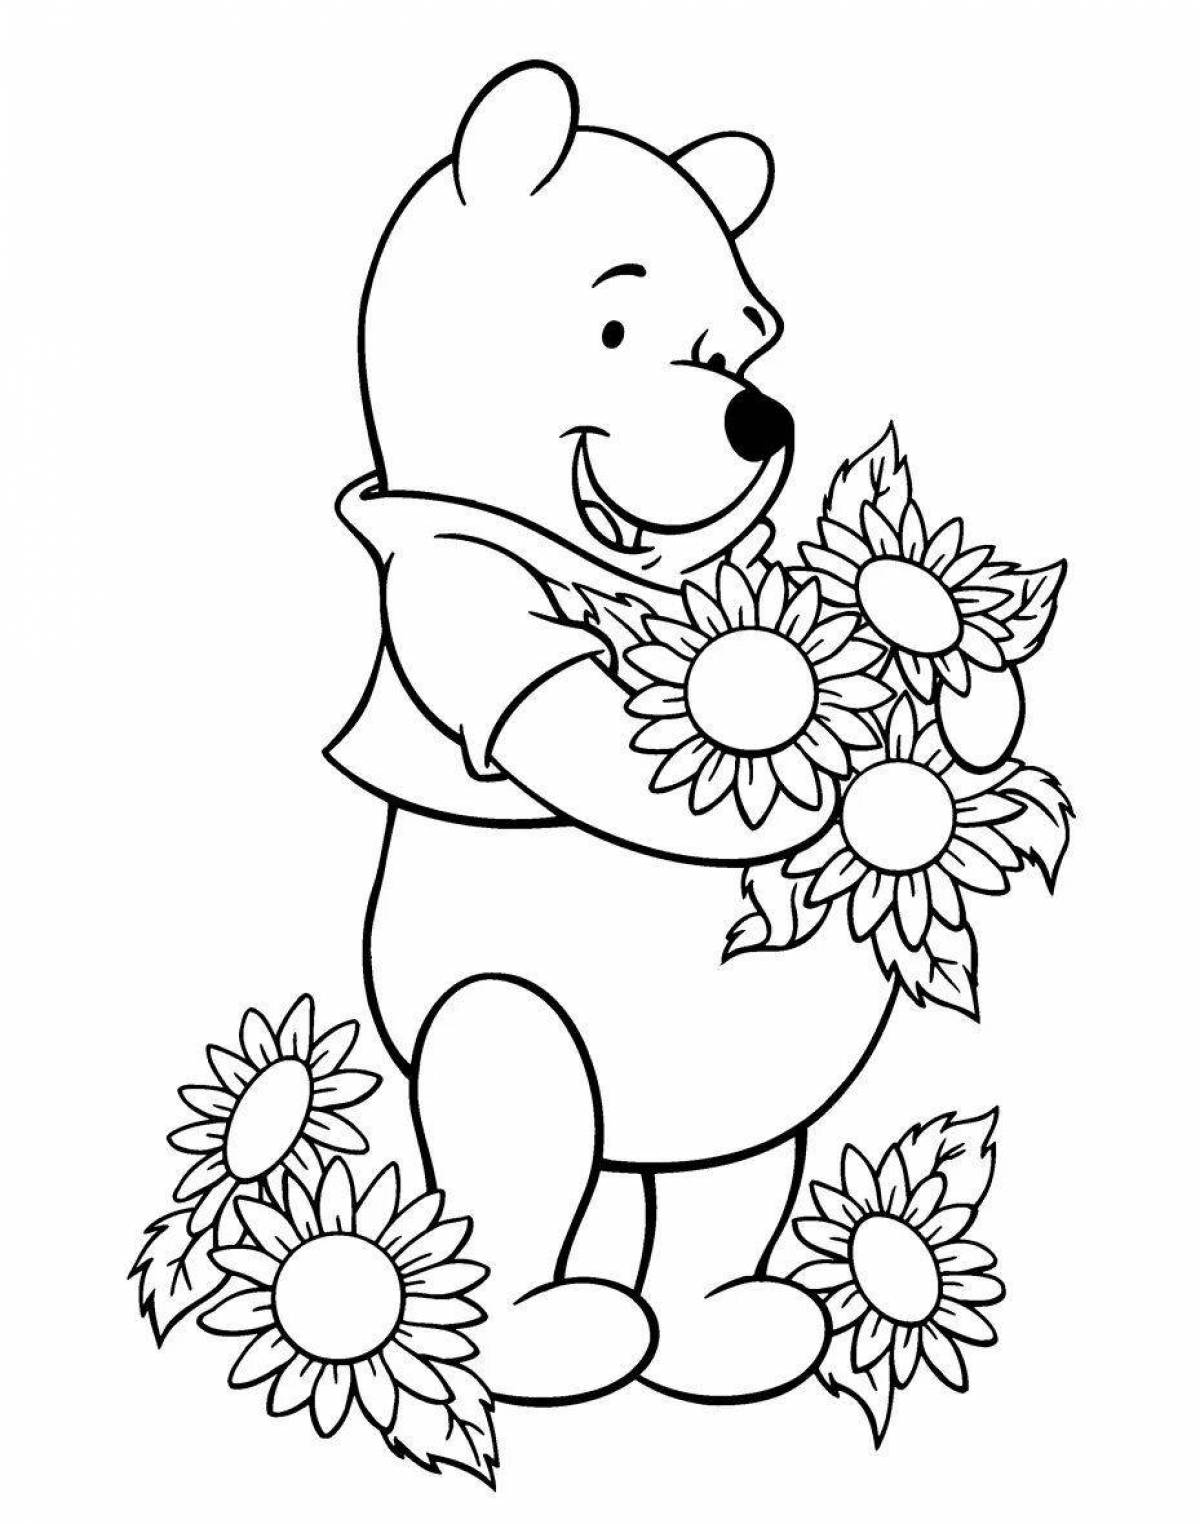 Раскраска очаровательный медведь для детей 6-7 лет